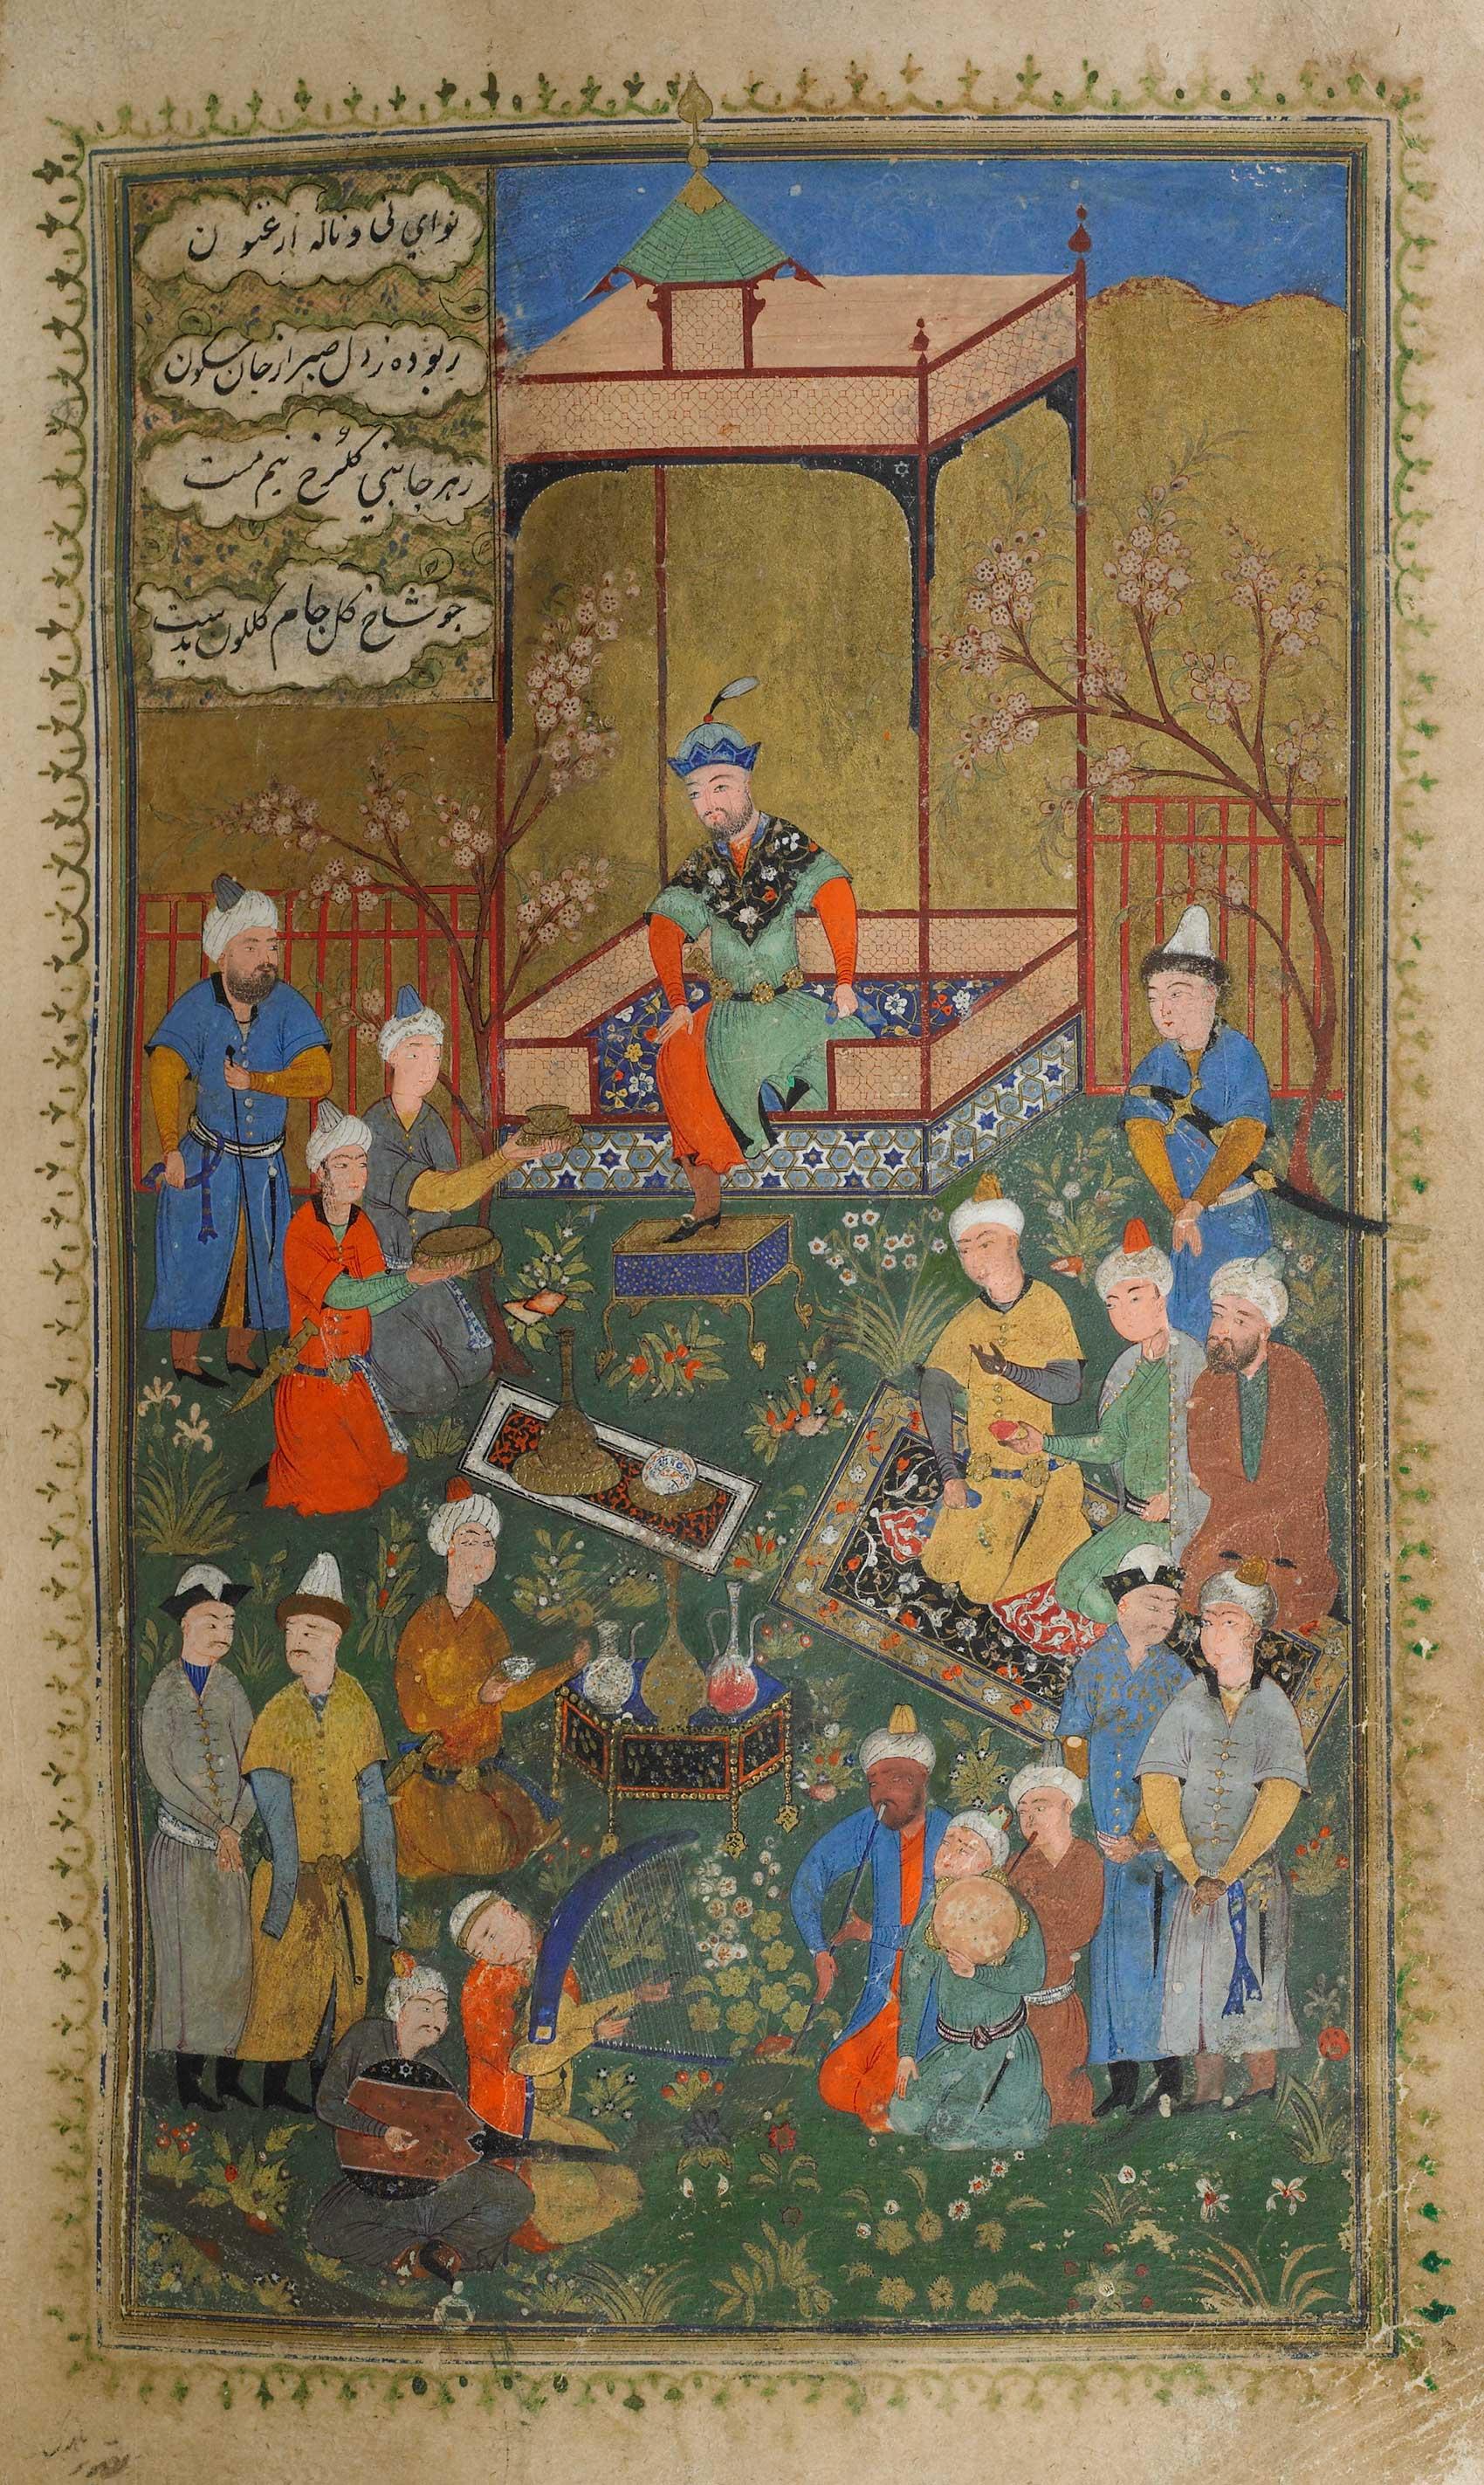 Timur holding court in a garden